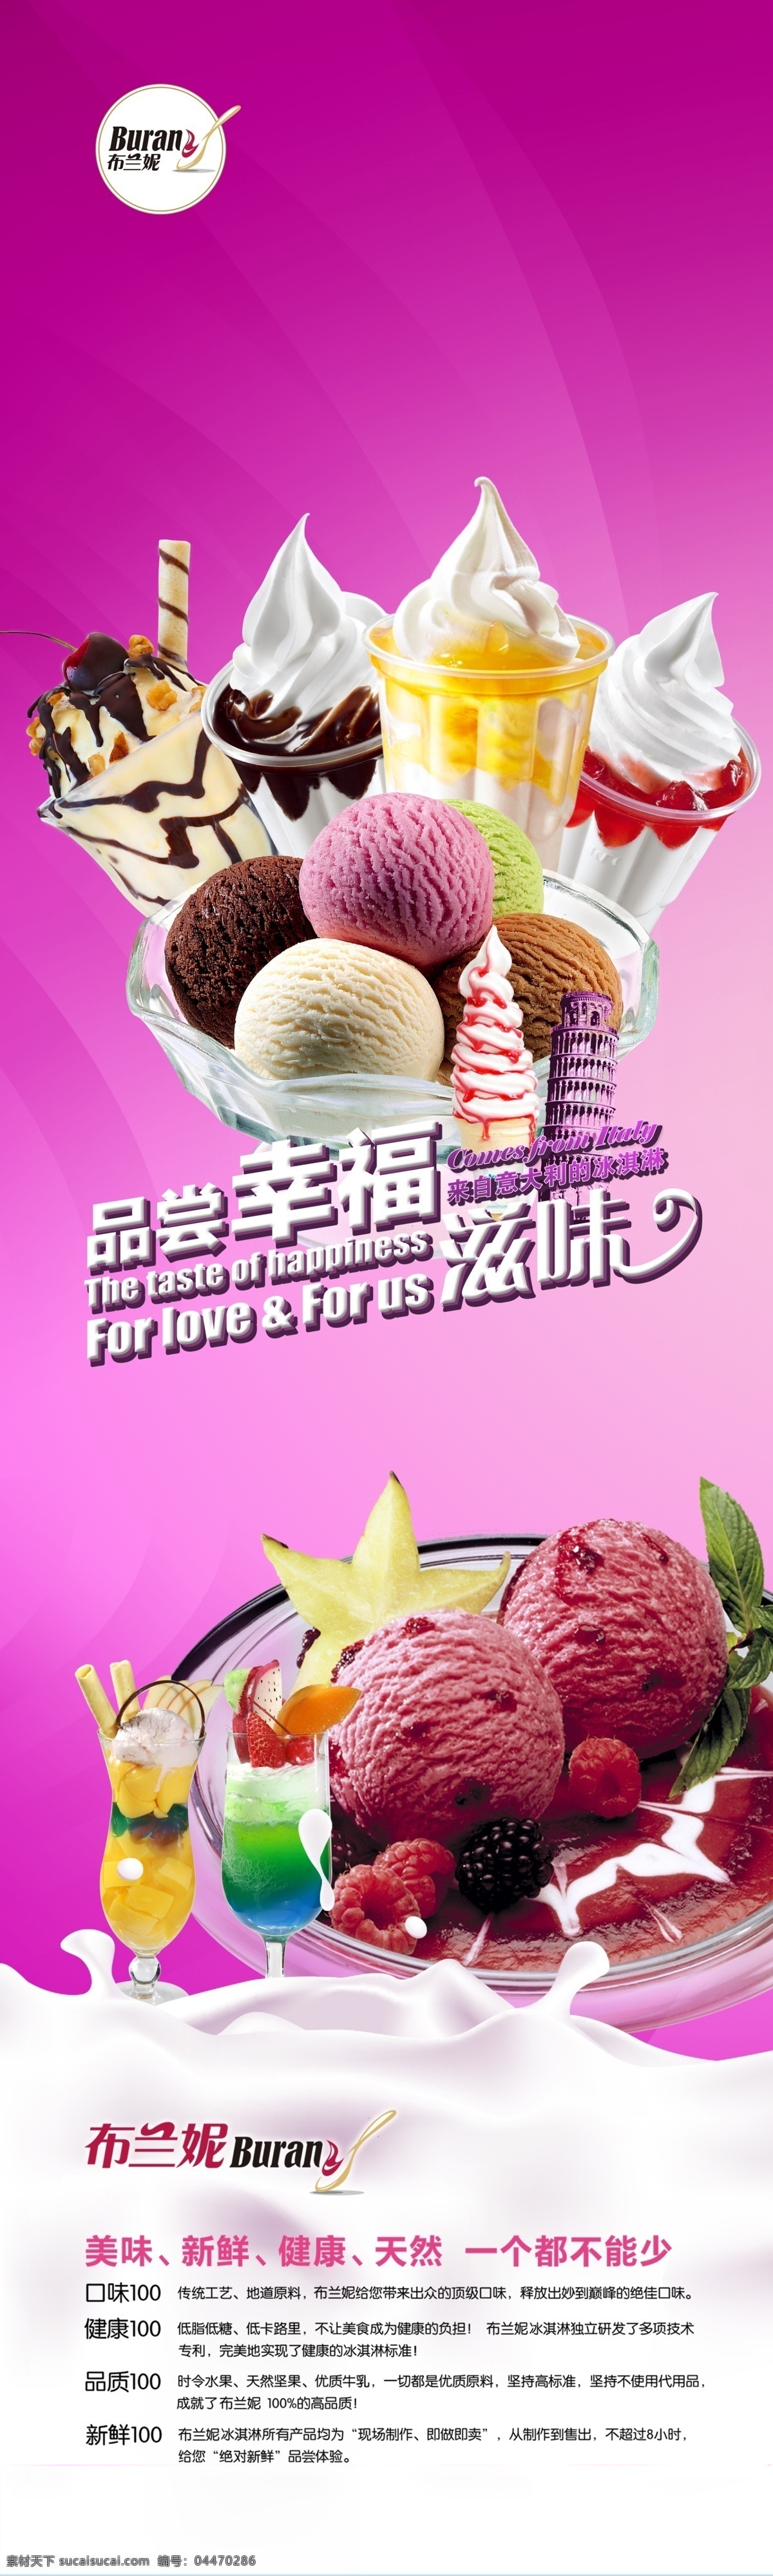 布兰妮 冰淇淋 冰淇淋x展架 x展架 奶 牛奶 渐变背景 食品 食物 国内广告设计 广告设计模板 源文件